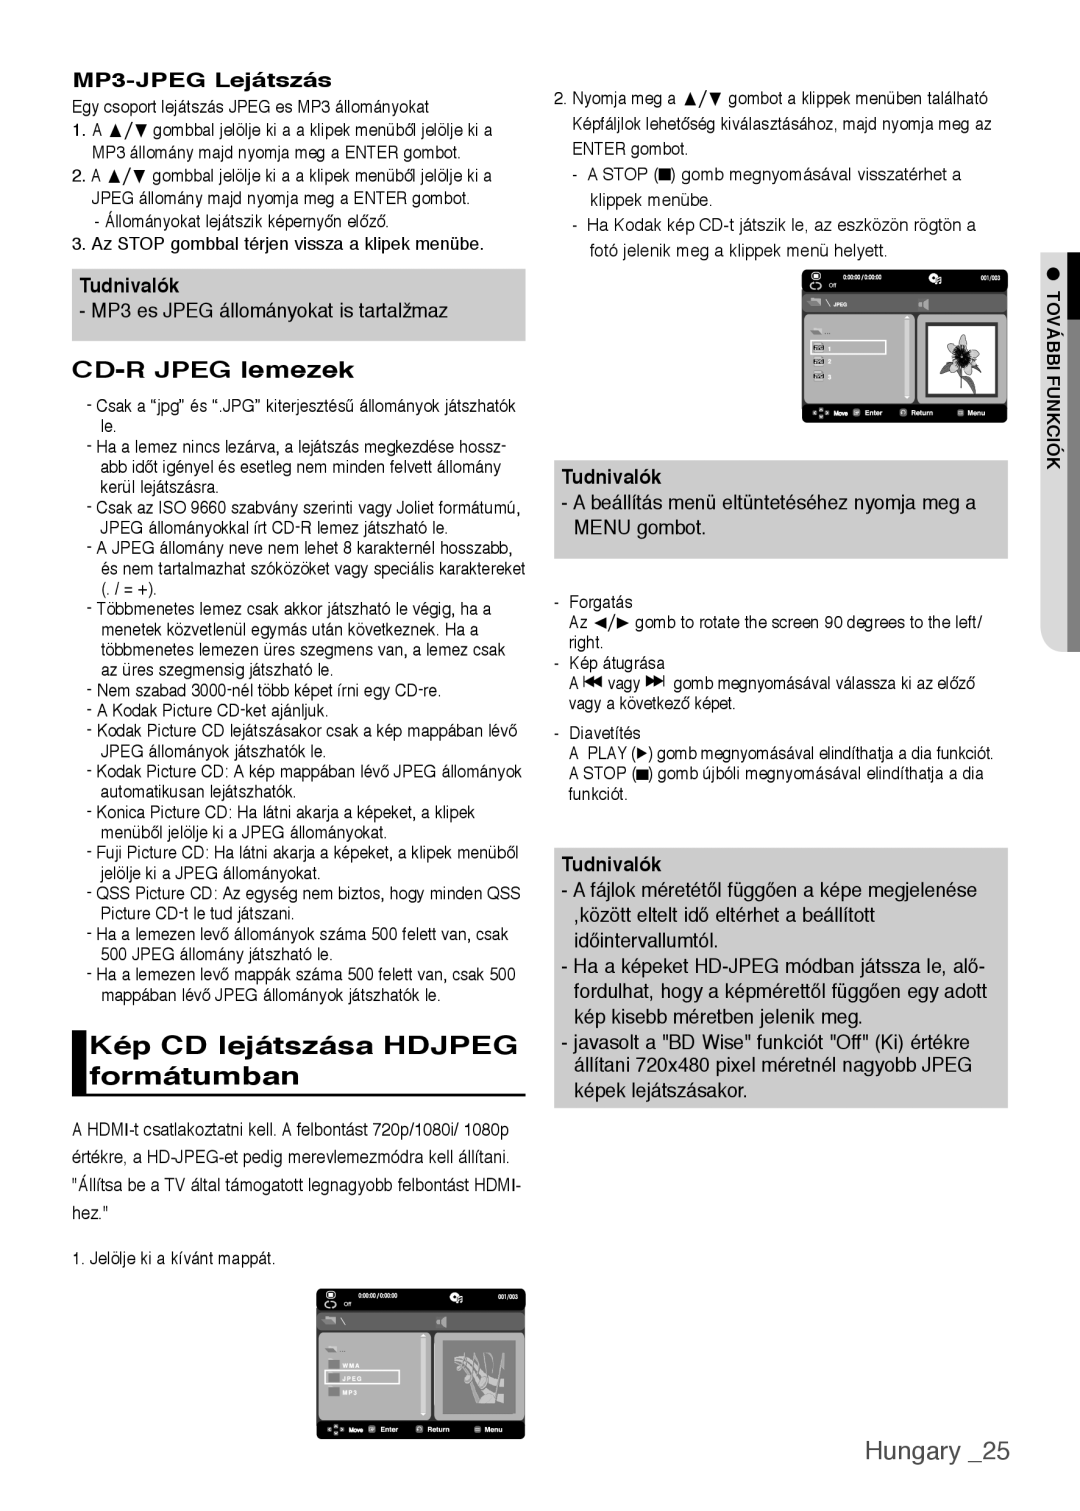 Samsung DVD-H1080W/EDC, DVD-H1080/EDC manual Kép CD lejátszása HDJPEG formátumban, Hungary, MP3-JPEG Lejátszás, Tudnivalók 